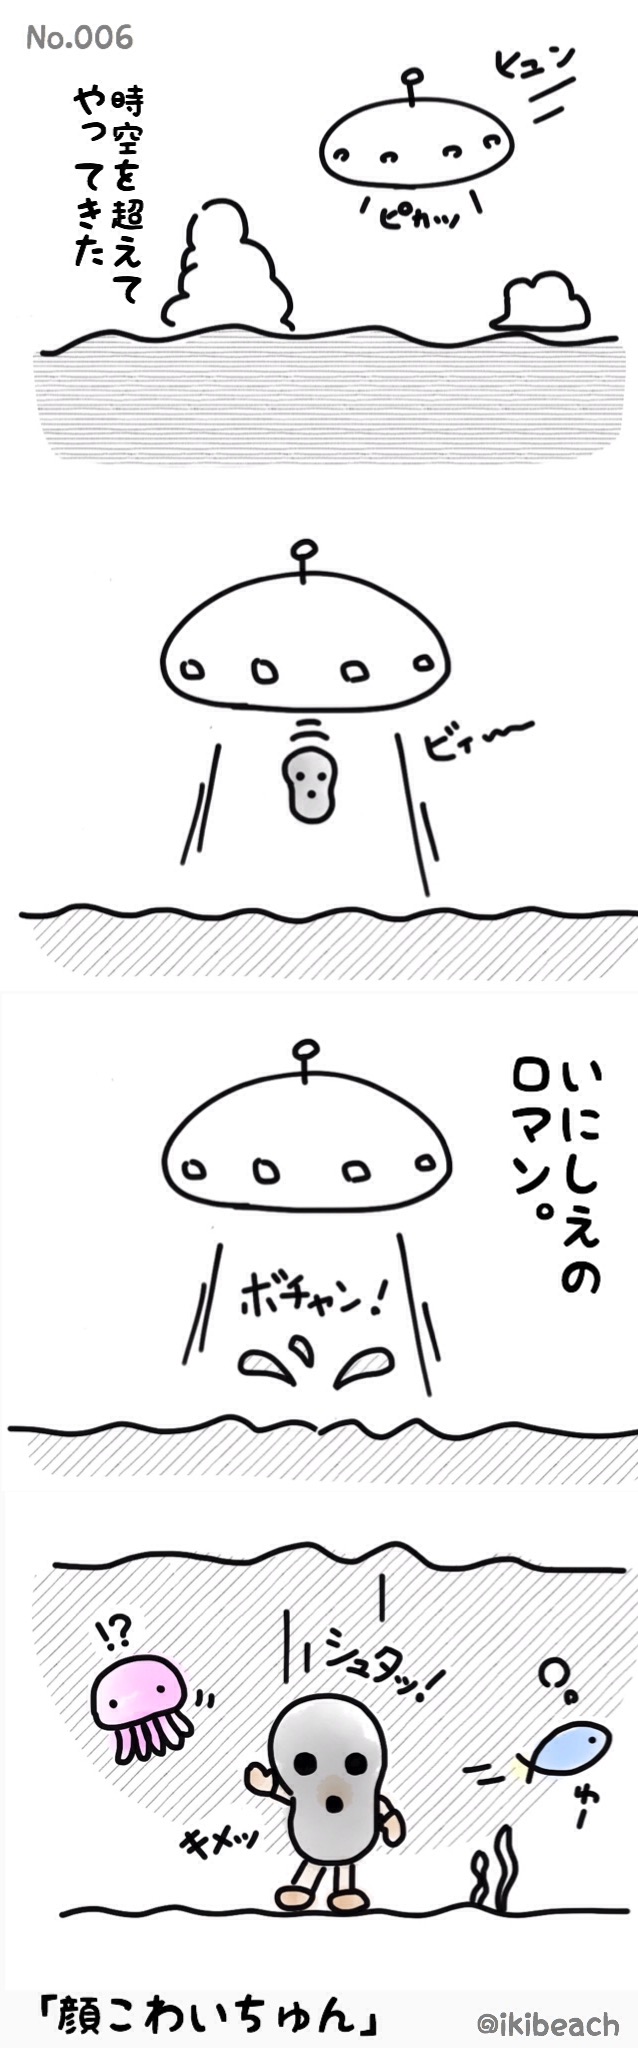 コバルト漫画「お魚だもの。」No.006『顔こわいちゅん』